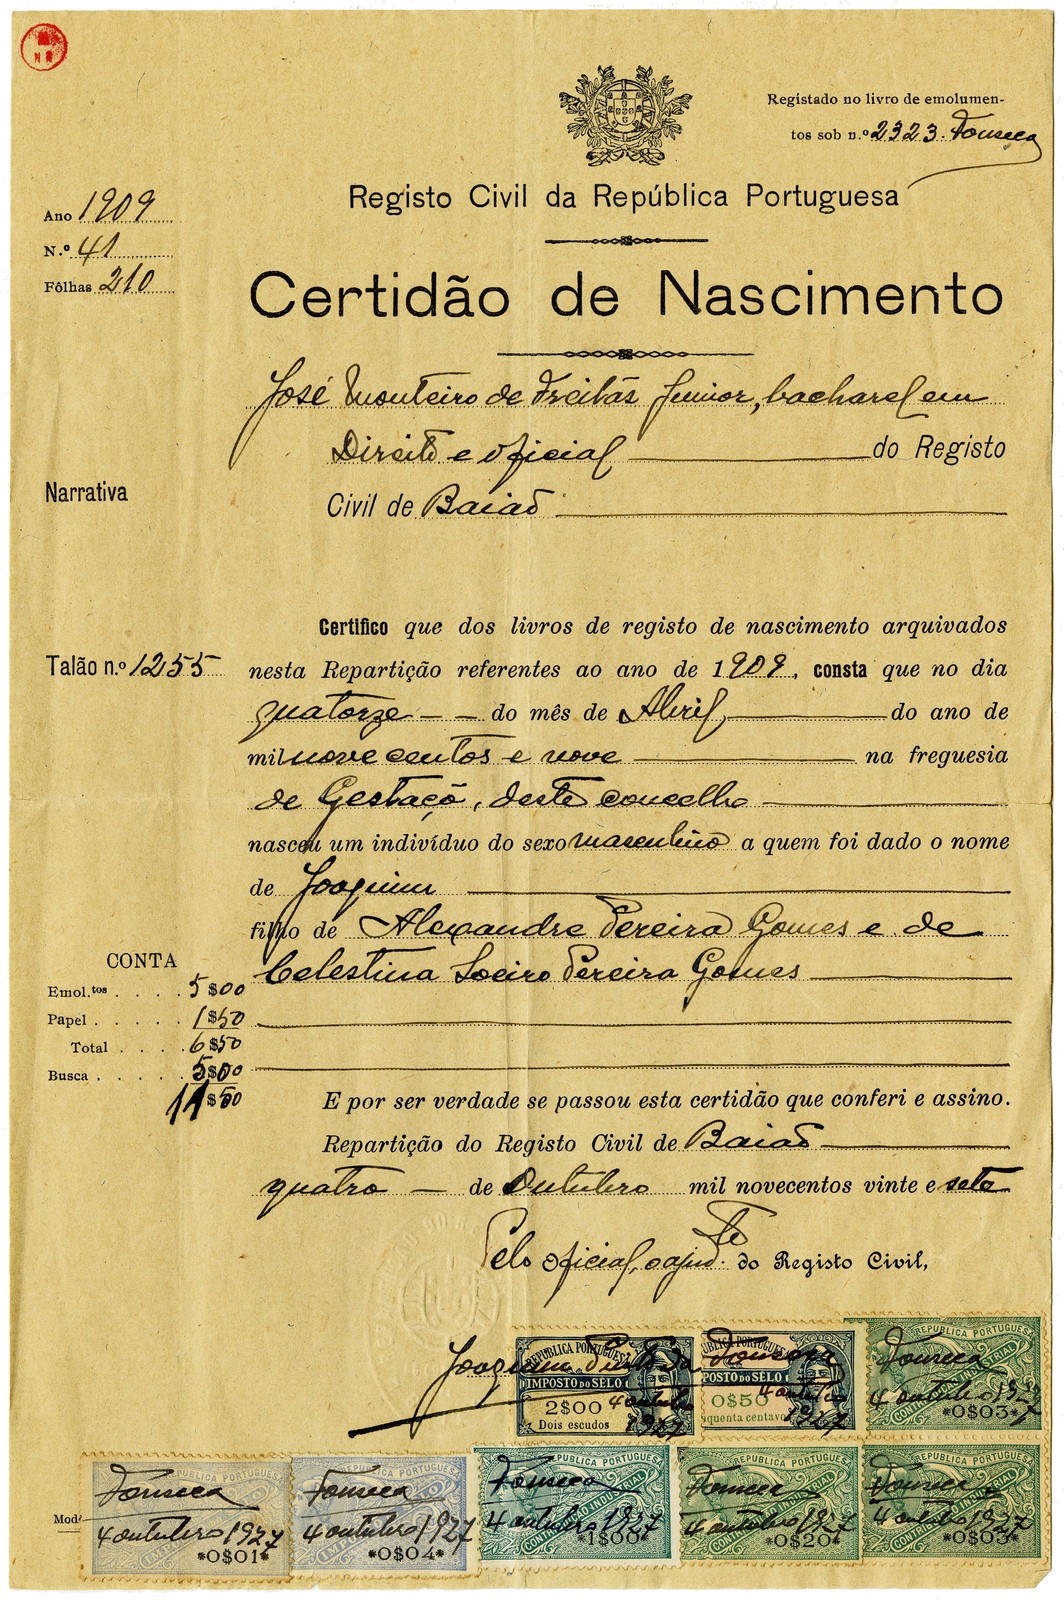 Certidão de nascimento, Registo Civil da República Portuguesa - Repartição do Registo Civil de Ba...